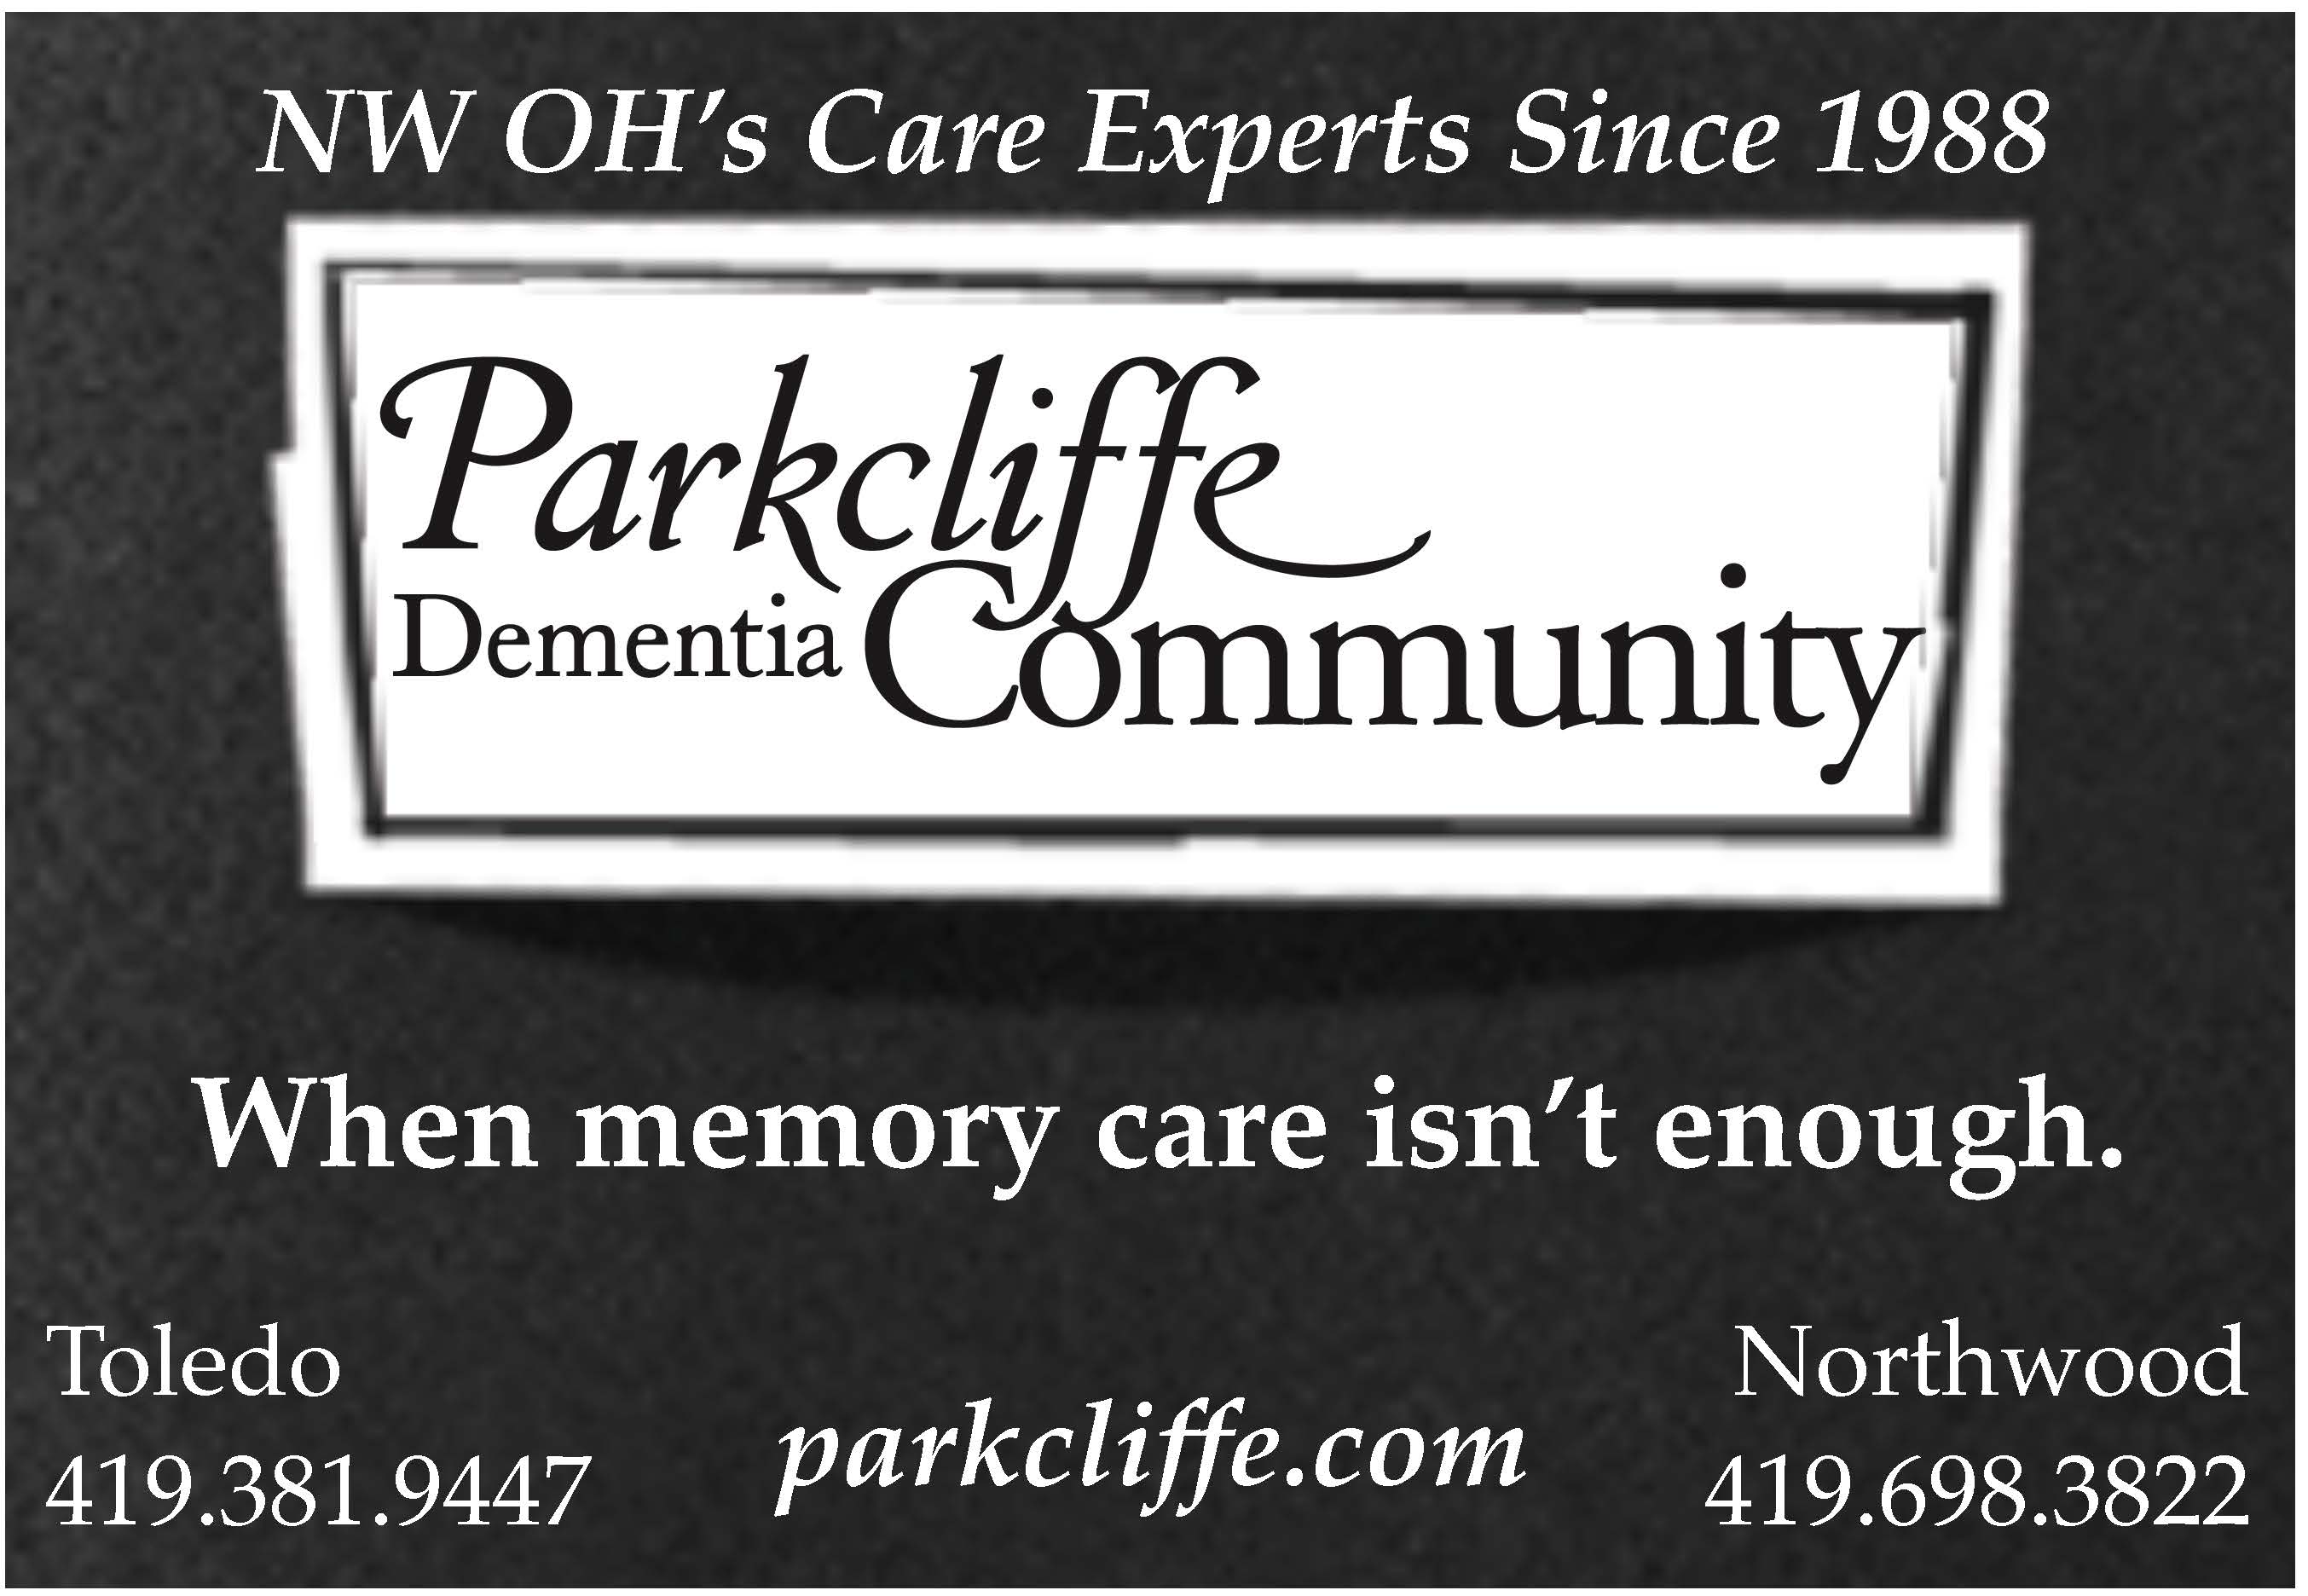 Parkcliffe Dementia Community